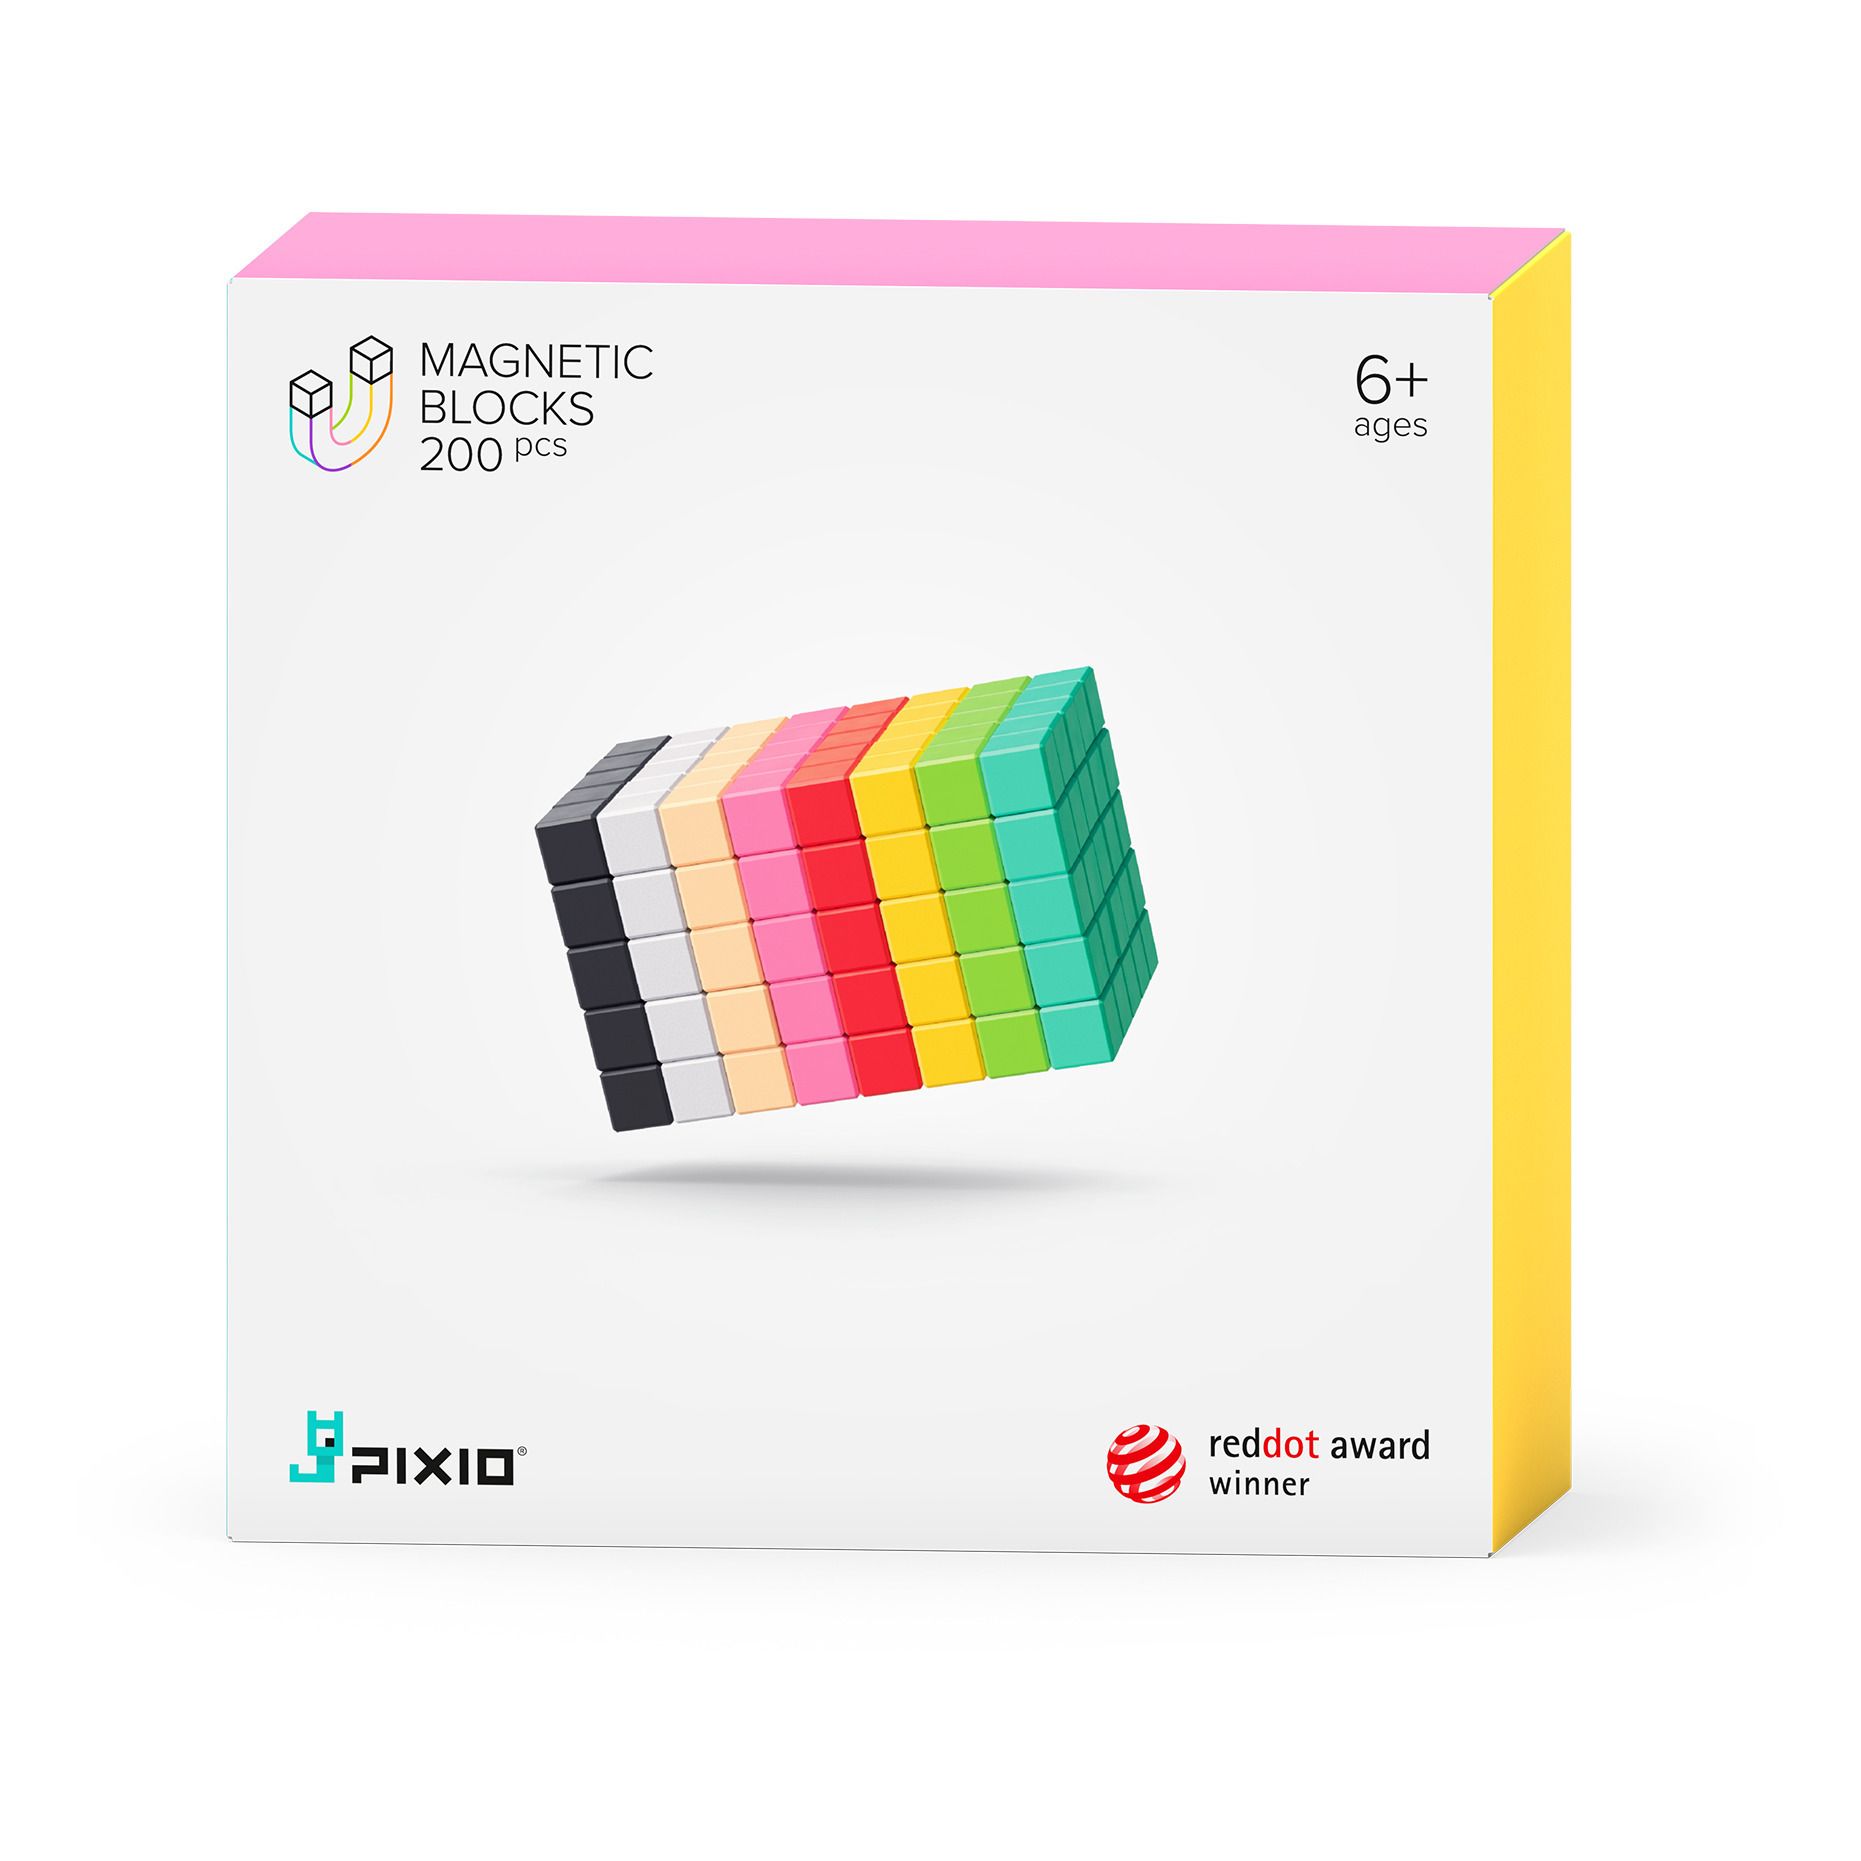 PIXIO - Jeu de construction magnétique - 200 pièces - Multicolore